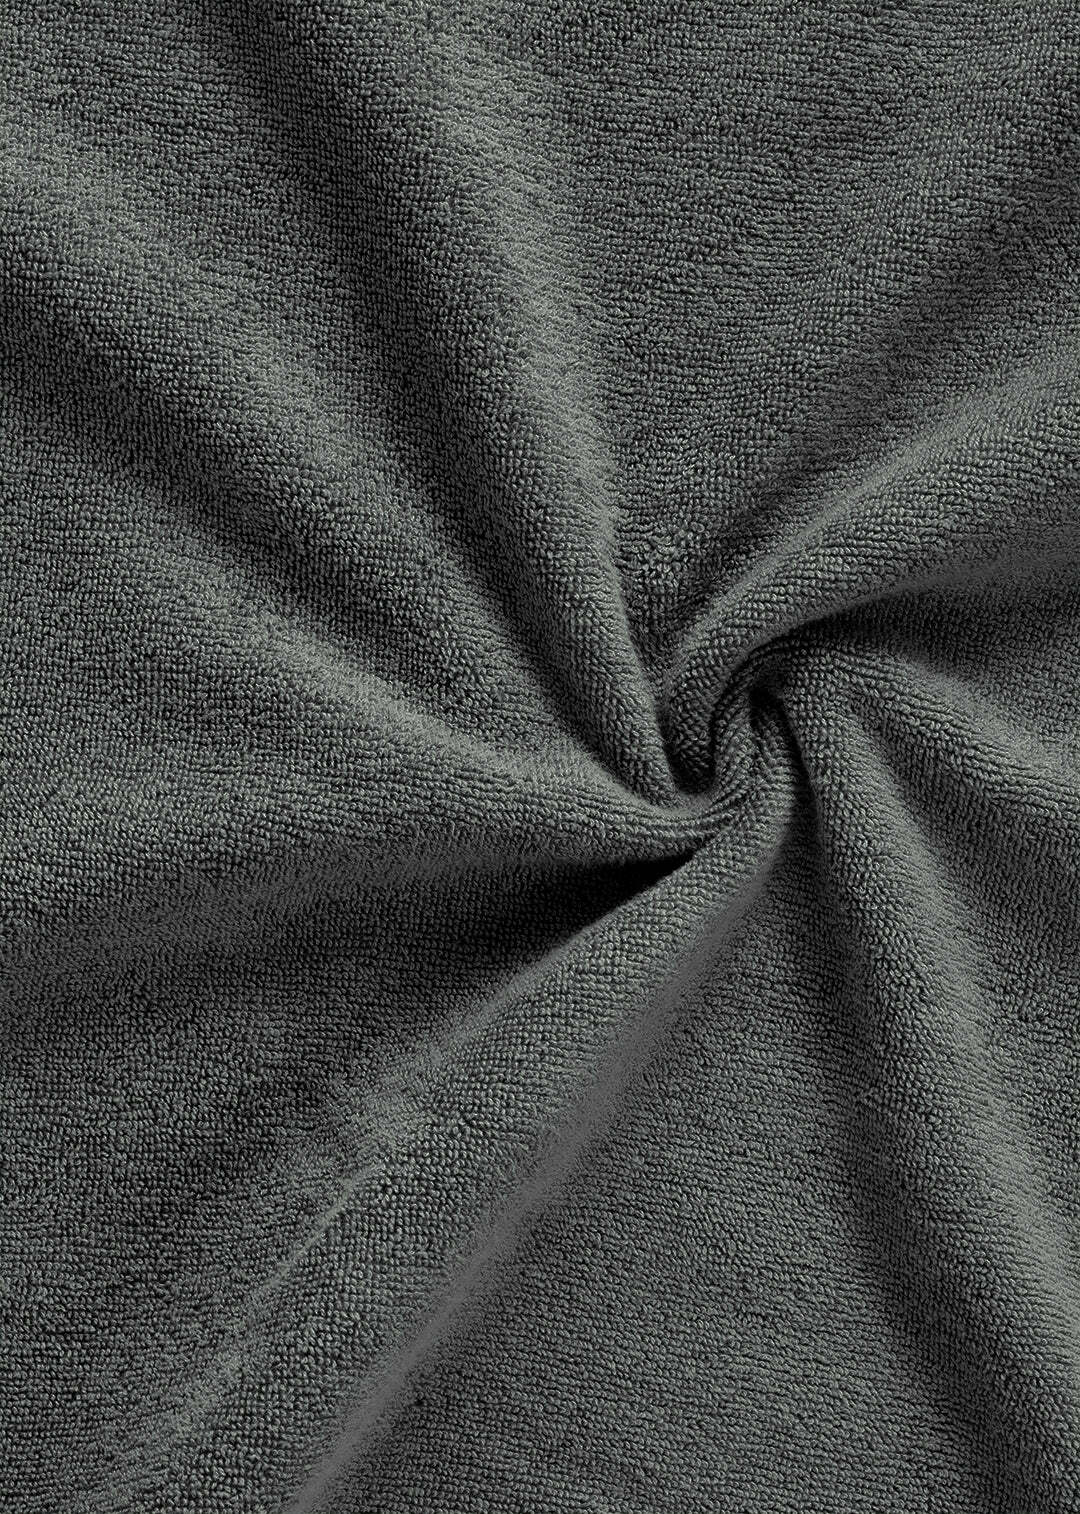 Handtuch Baumwolle Anthrazit 100 x 150 cm 1